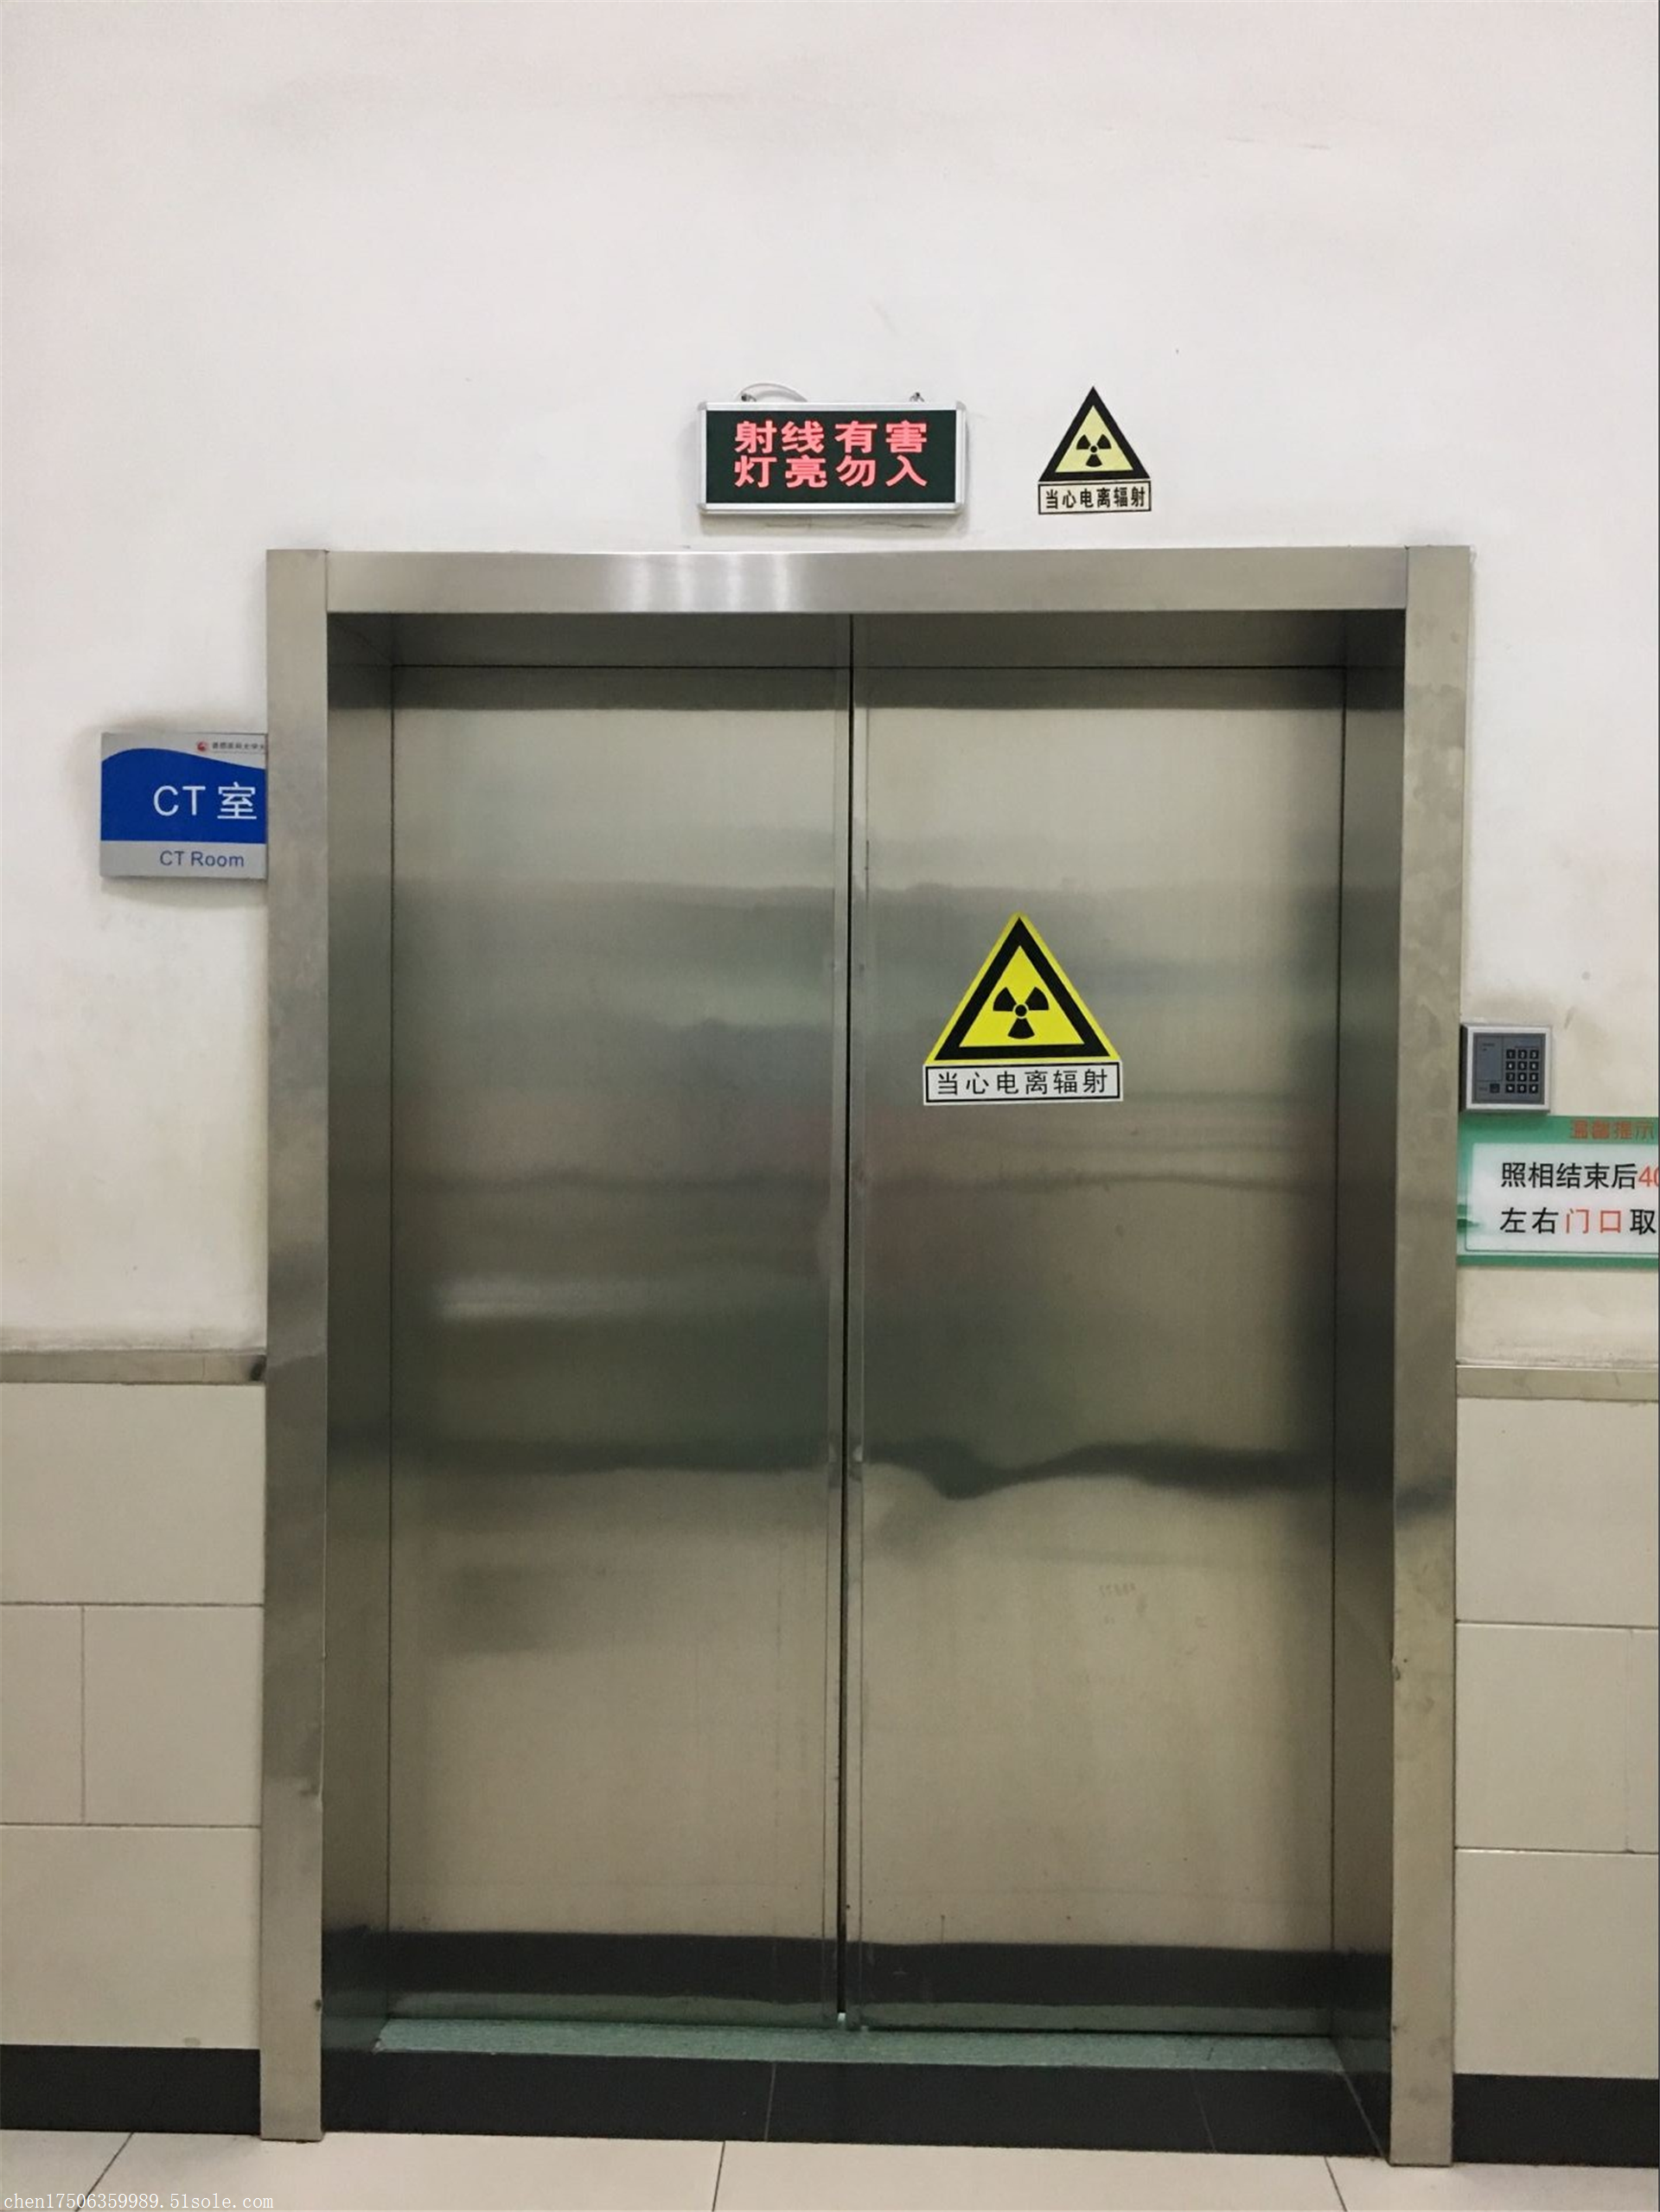 ct室防辐射门